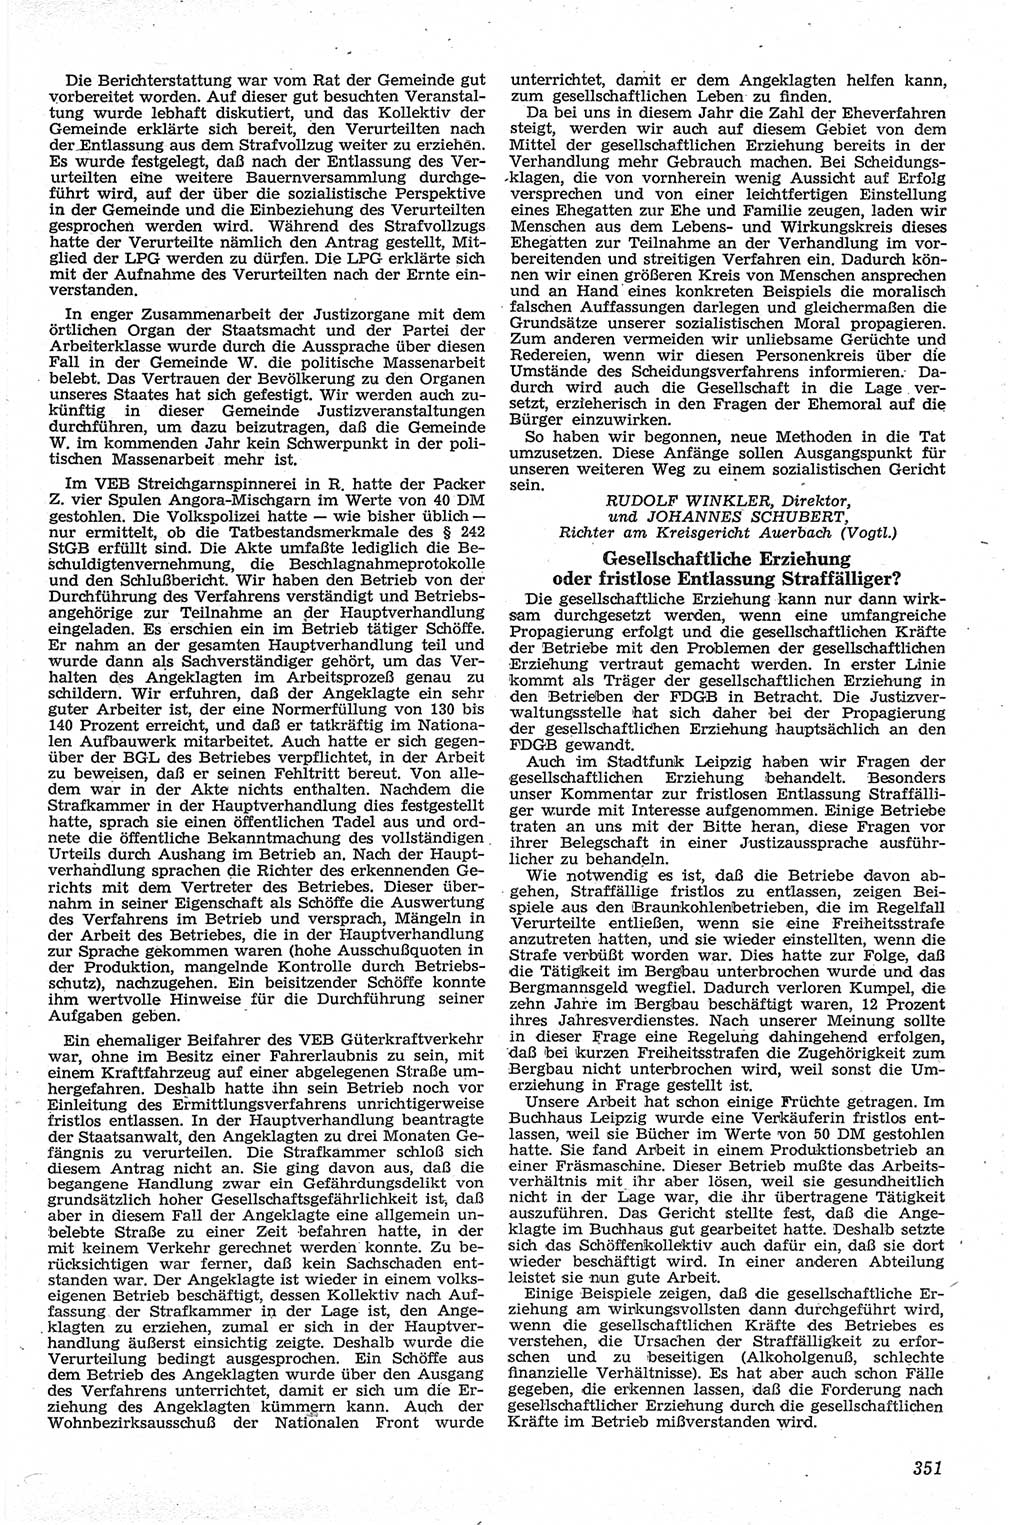 Neue Justiz (NJ), Zeitschrift für Recht und Rechtswissenschaft [Deutsche Demokratische Republik (DDR)], 13. Jahrgang 1959, Seite 351 (NJ DDR 1959, S. 351)